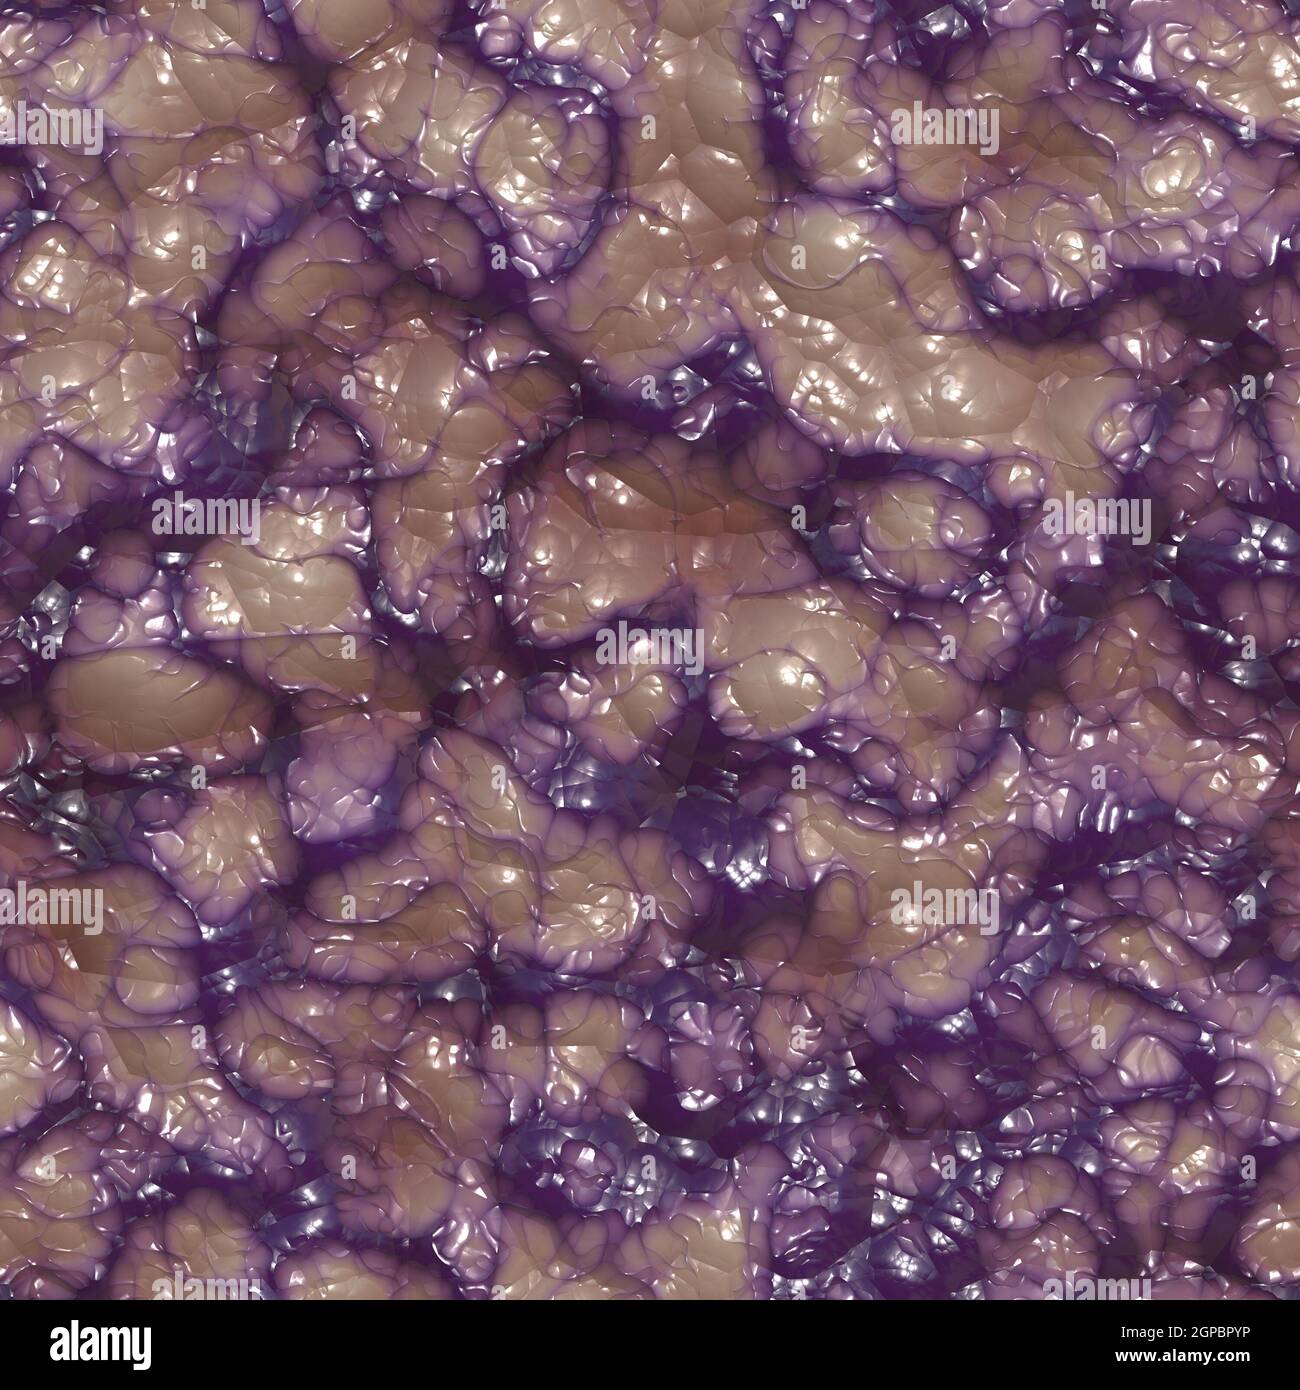 Purple blotchy varicose veins through skin seamless texture 3D illustration Stock Photo